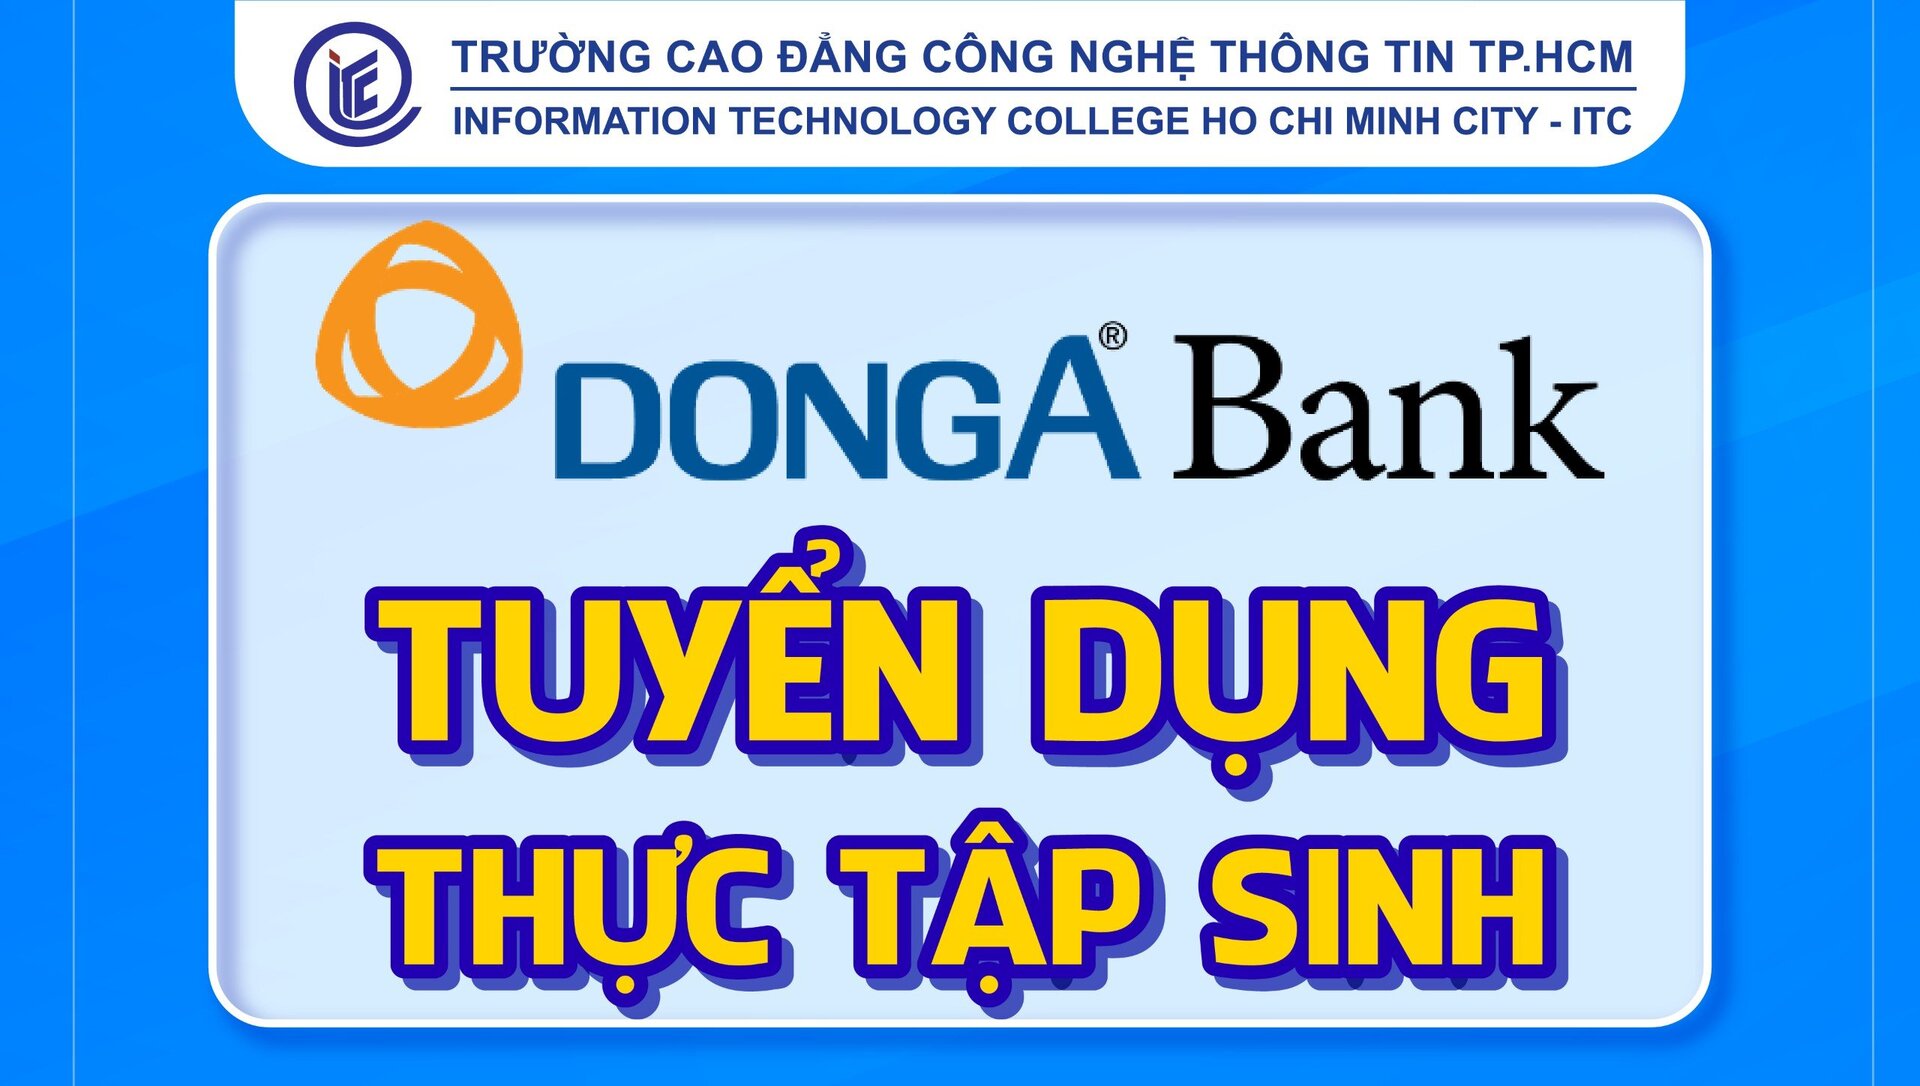 Ngân hàng DongA Bank tuyển dụng nhiều vị trí Thực tập sinh Tiềm năng